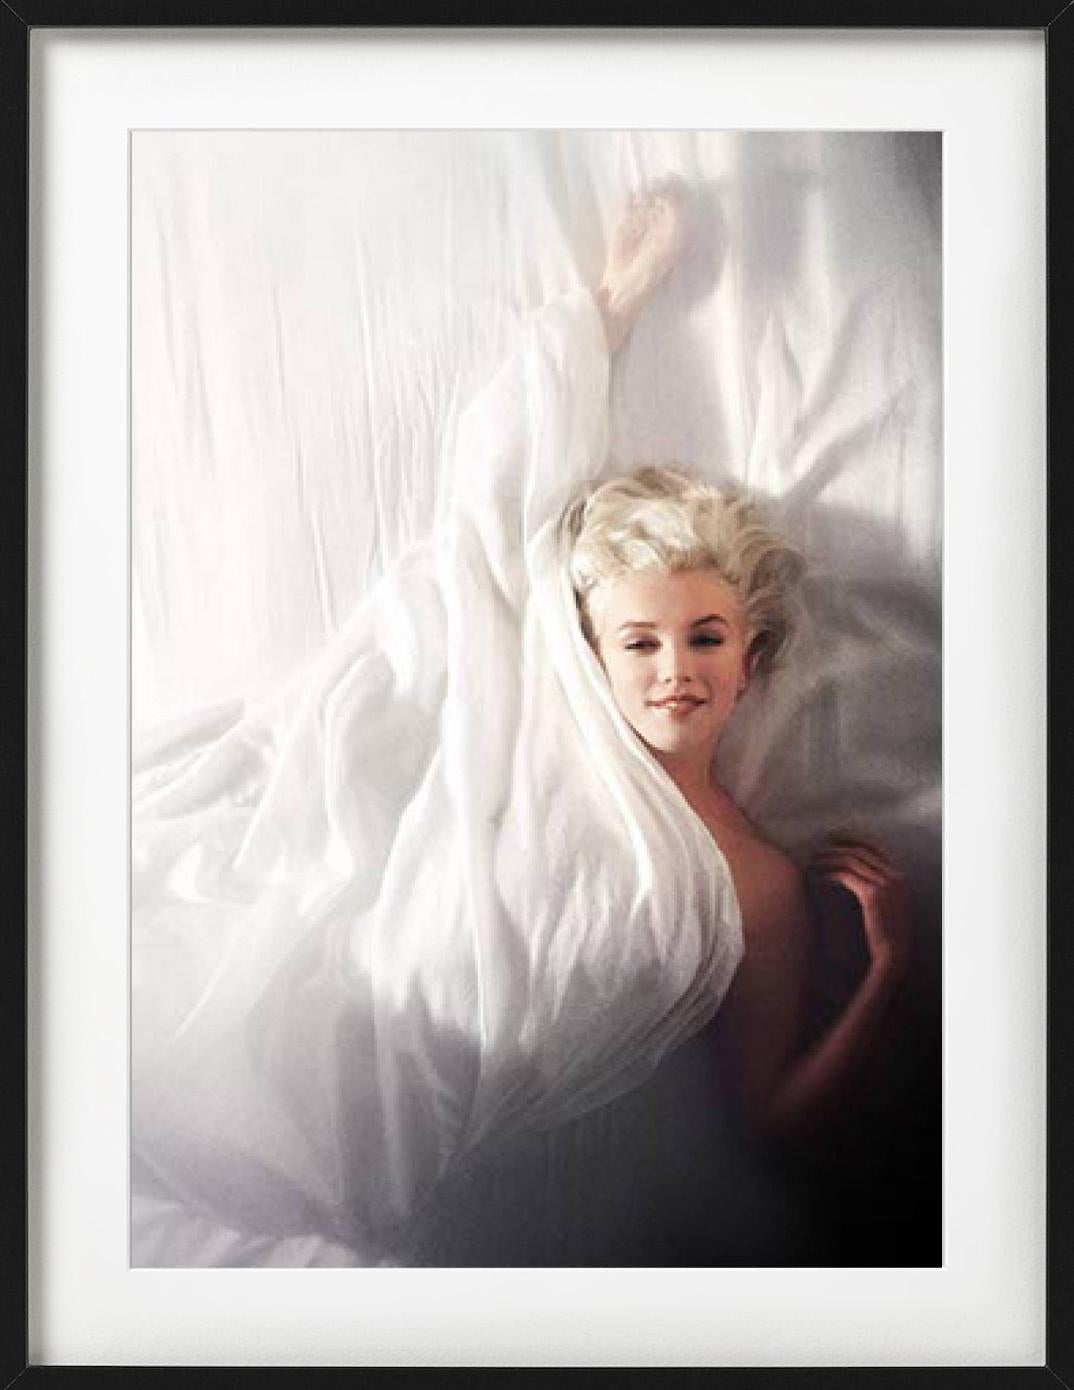 Marilyn Monroe - nue entre feuilles blanches, photographie d'art vintage, 1961 - Photograph de Douglas Kirkland